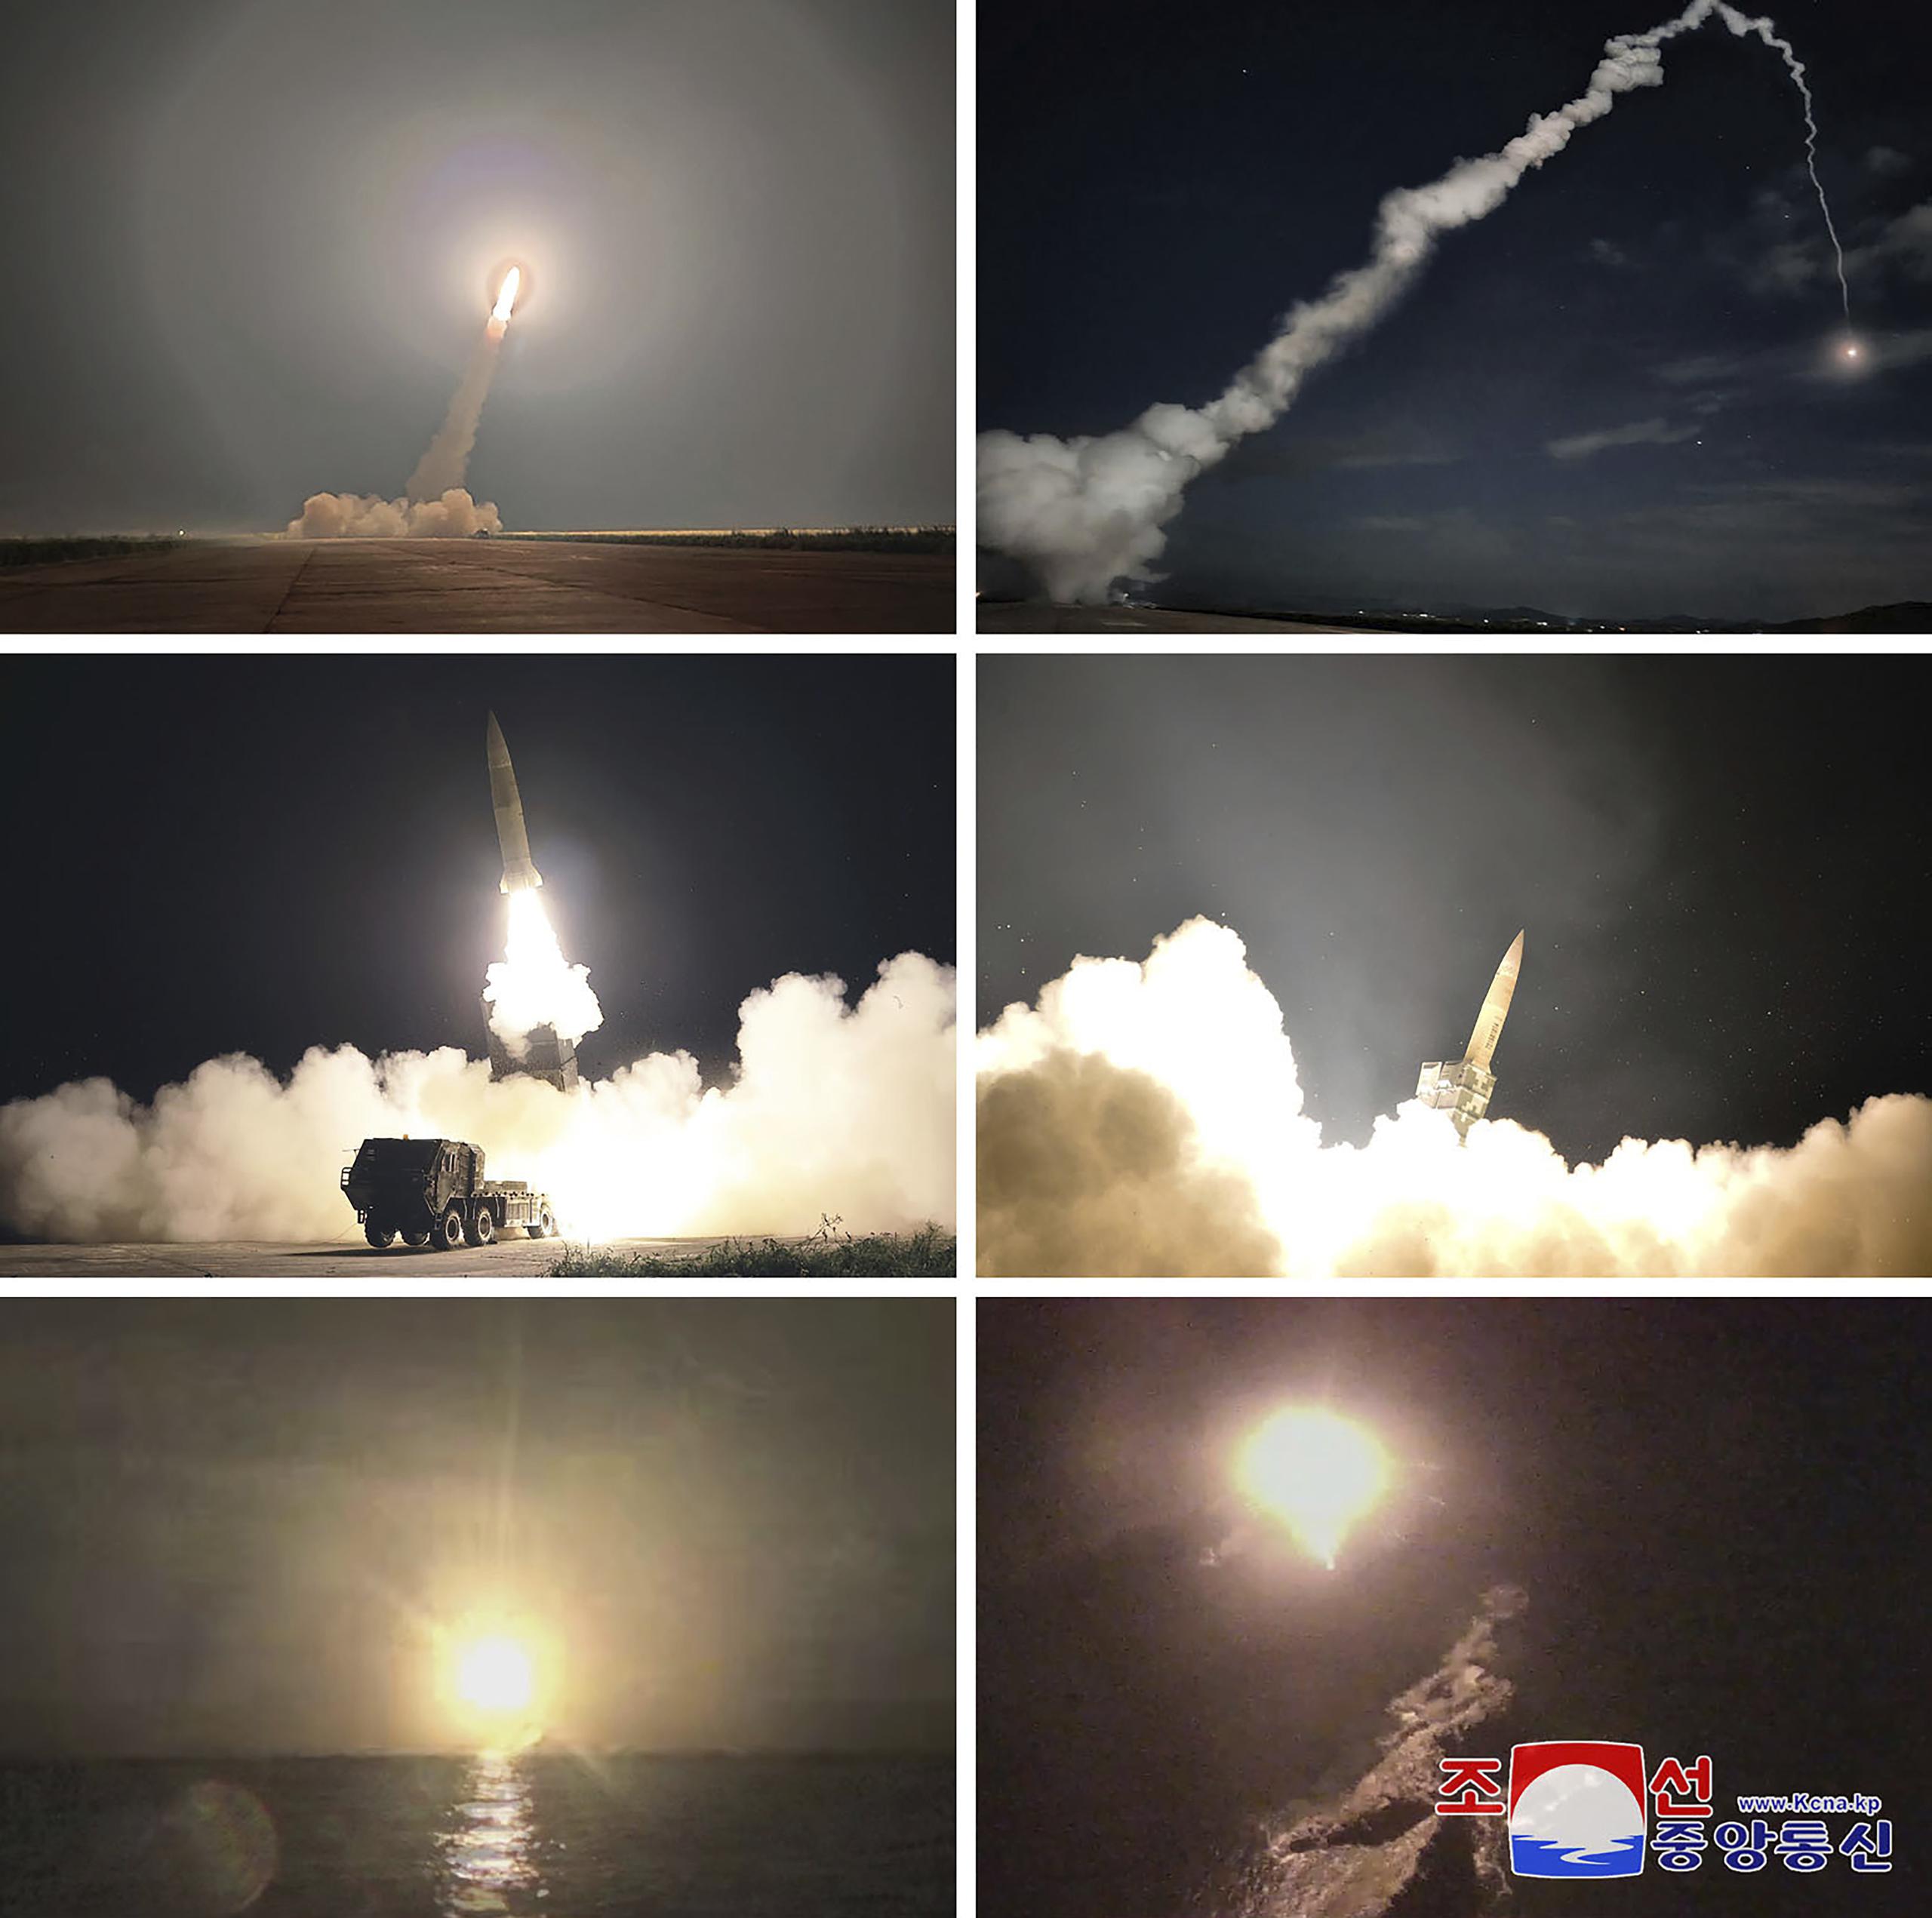 El ejército norcoreano explicó que los misiles llevaron a cabo ataques simulados a través de ráfagas de aire, lo que sugiere que confirmó las explosiones de ojivas ficticias a una altitud determinada.